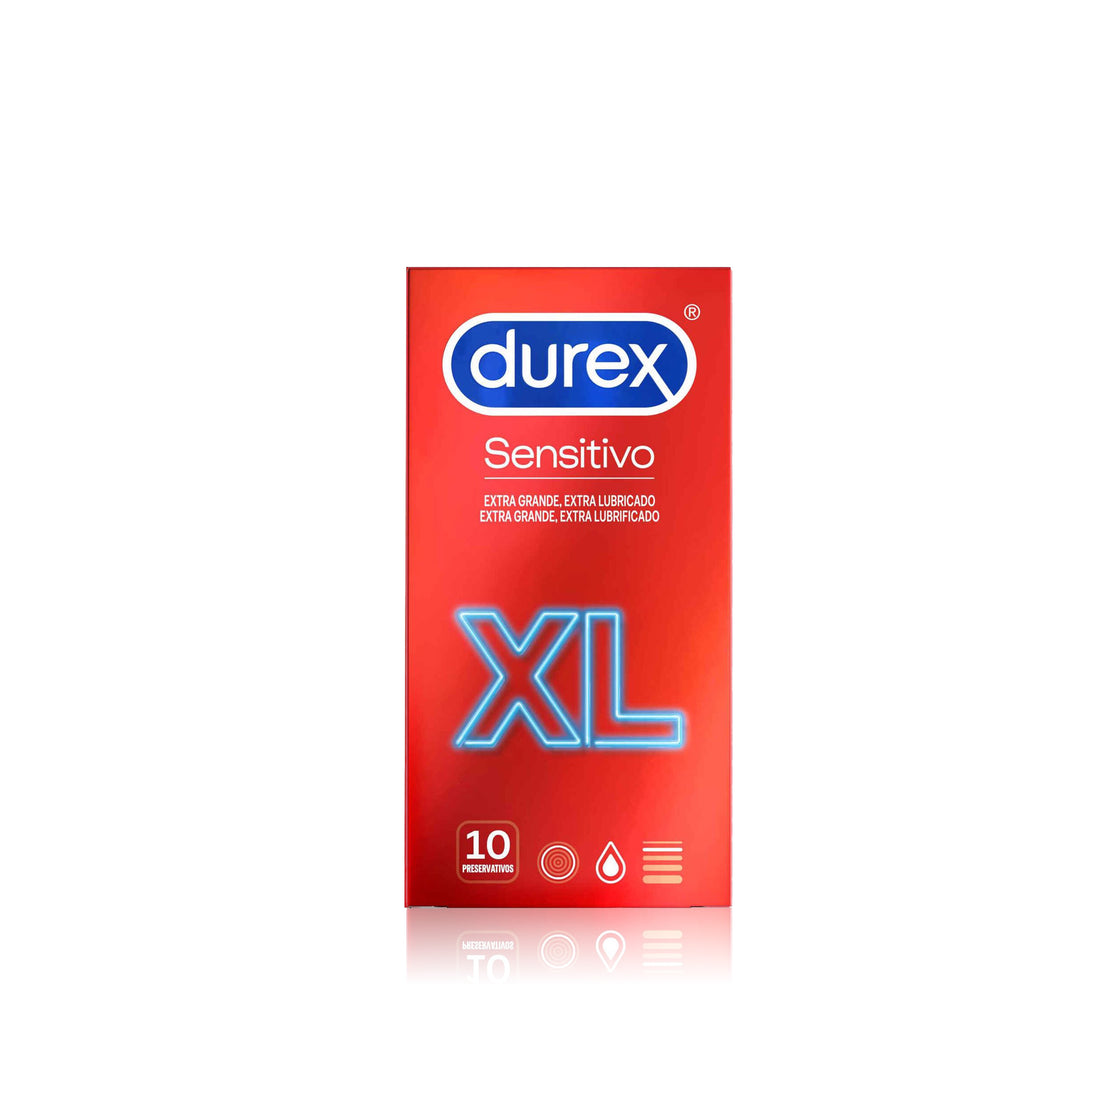 Durex Sensitive Condoms Xl 10 Un